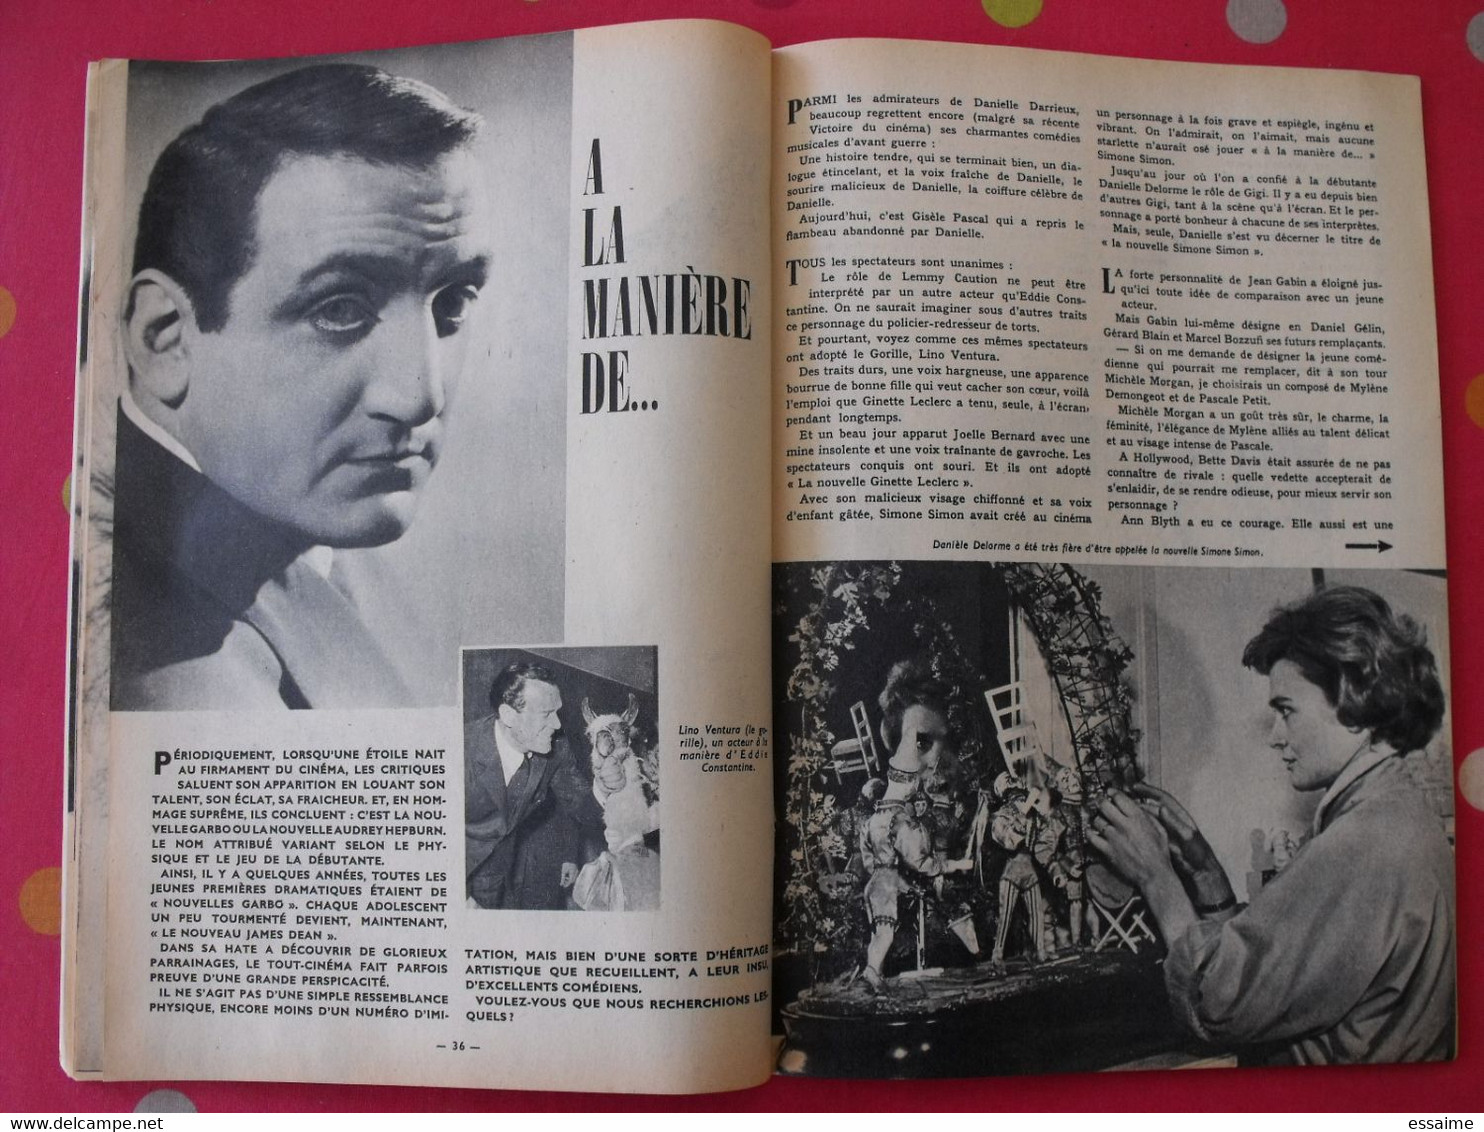 revue Jeunesse cinéma n° 15 de 1959. christine carrère rock hudson agnès laurent leslie caron gina lollobrigida (poster)